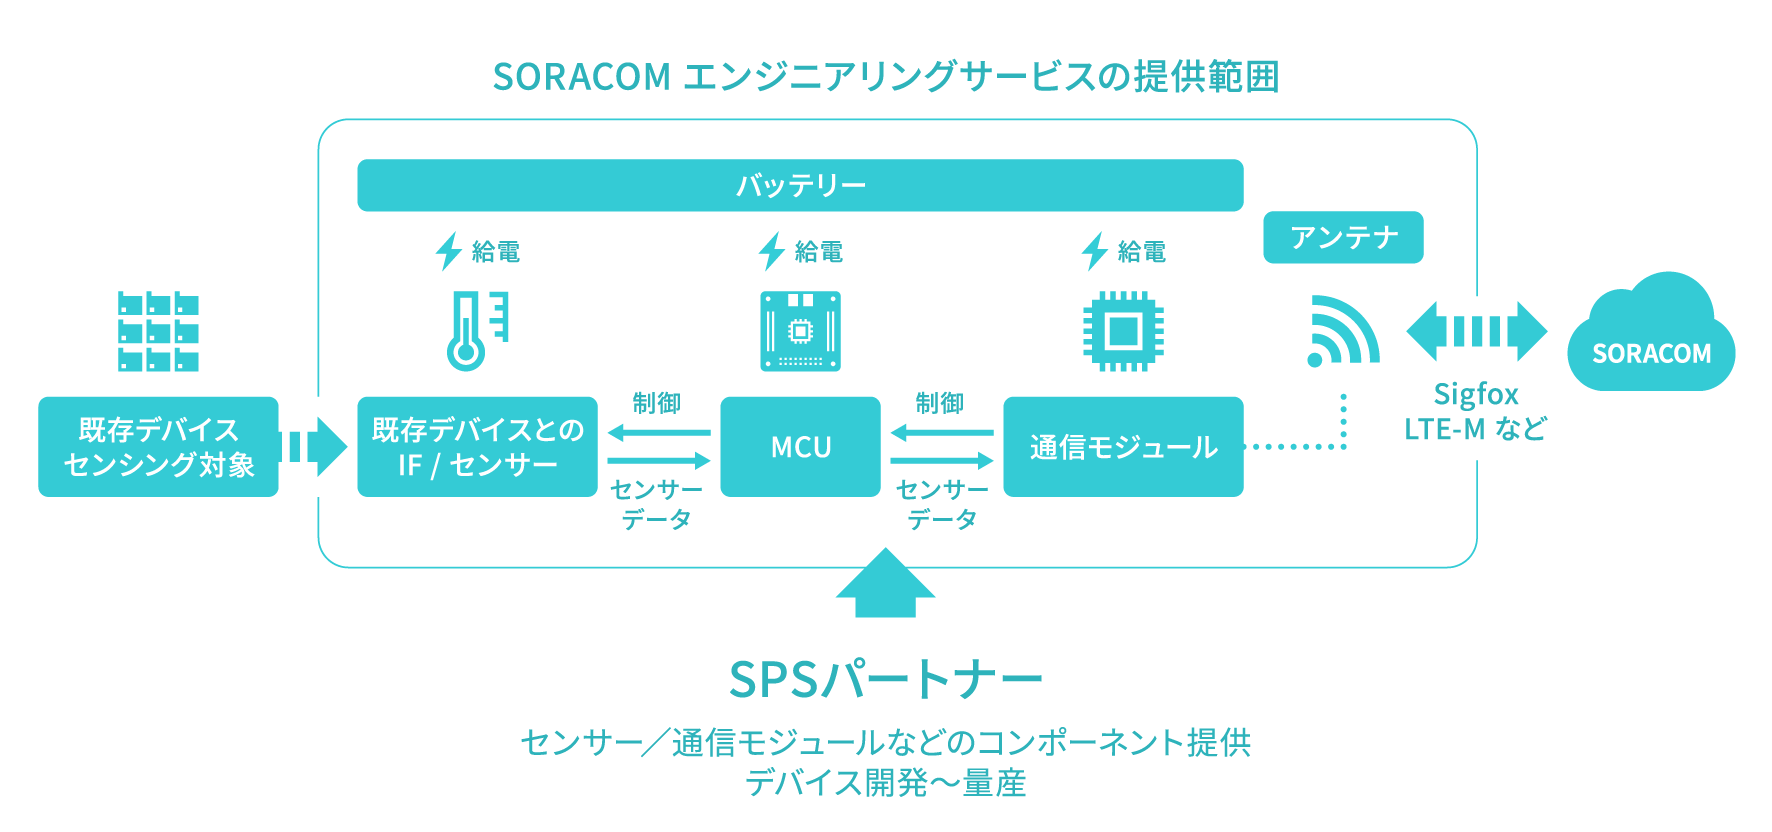 SORACOM エンジニアリングサービスの提供範囲図